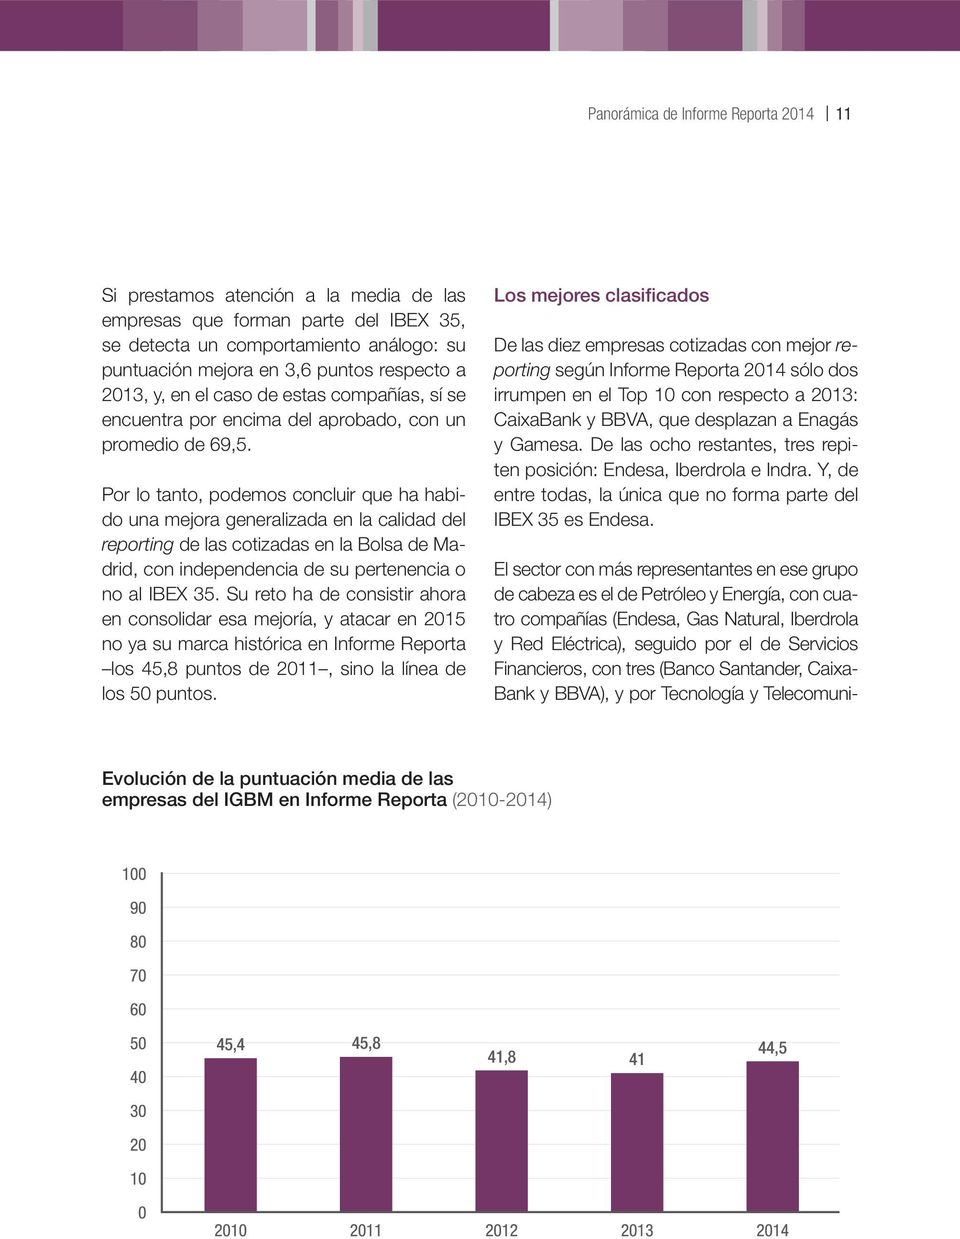 Por lo tanto, podemos concluir que ha habido una mejora generalizada en la calidad del reporting de las cotizadas en la Bolsa de Madrid, con independencia de su pertenencia o no al IBEX 35.